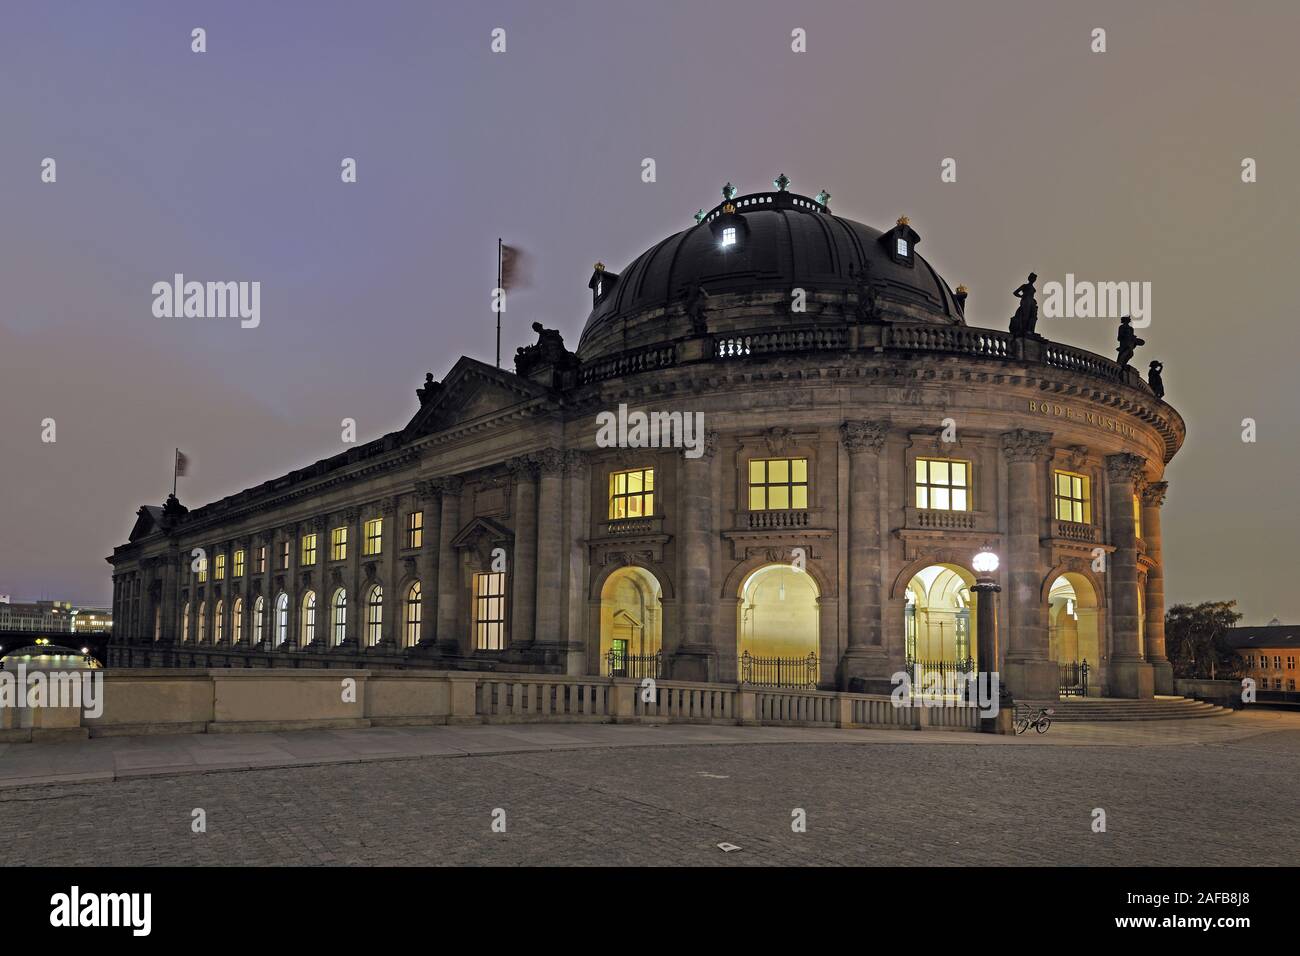 Bode Museum , Berlino, Museumsinsel, UNESCO Weltkulturerbe, Berlino, Deutschland, Europa, Nachtaufnahme Foto Stock